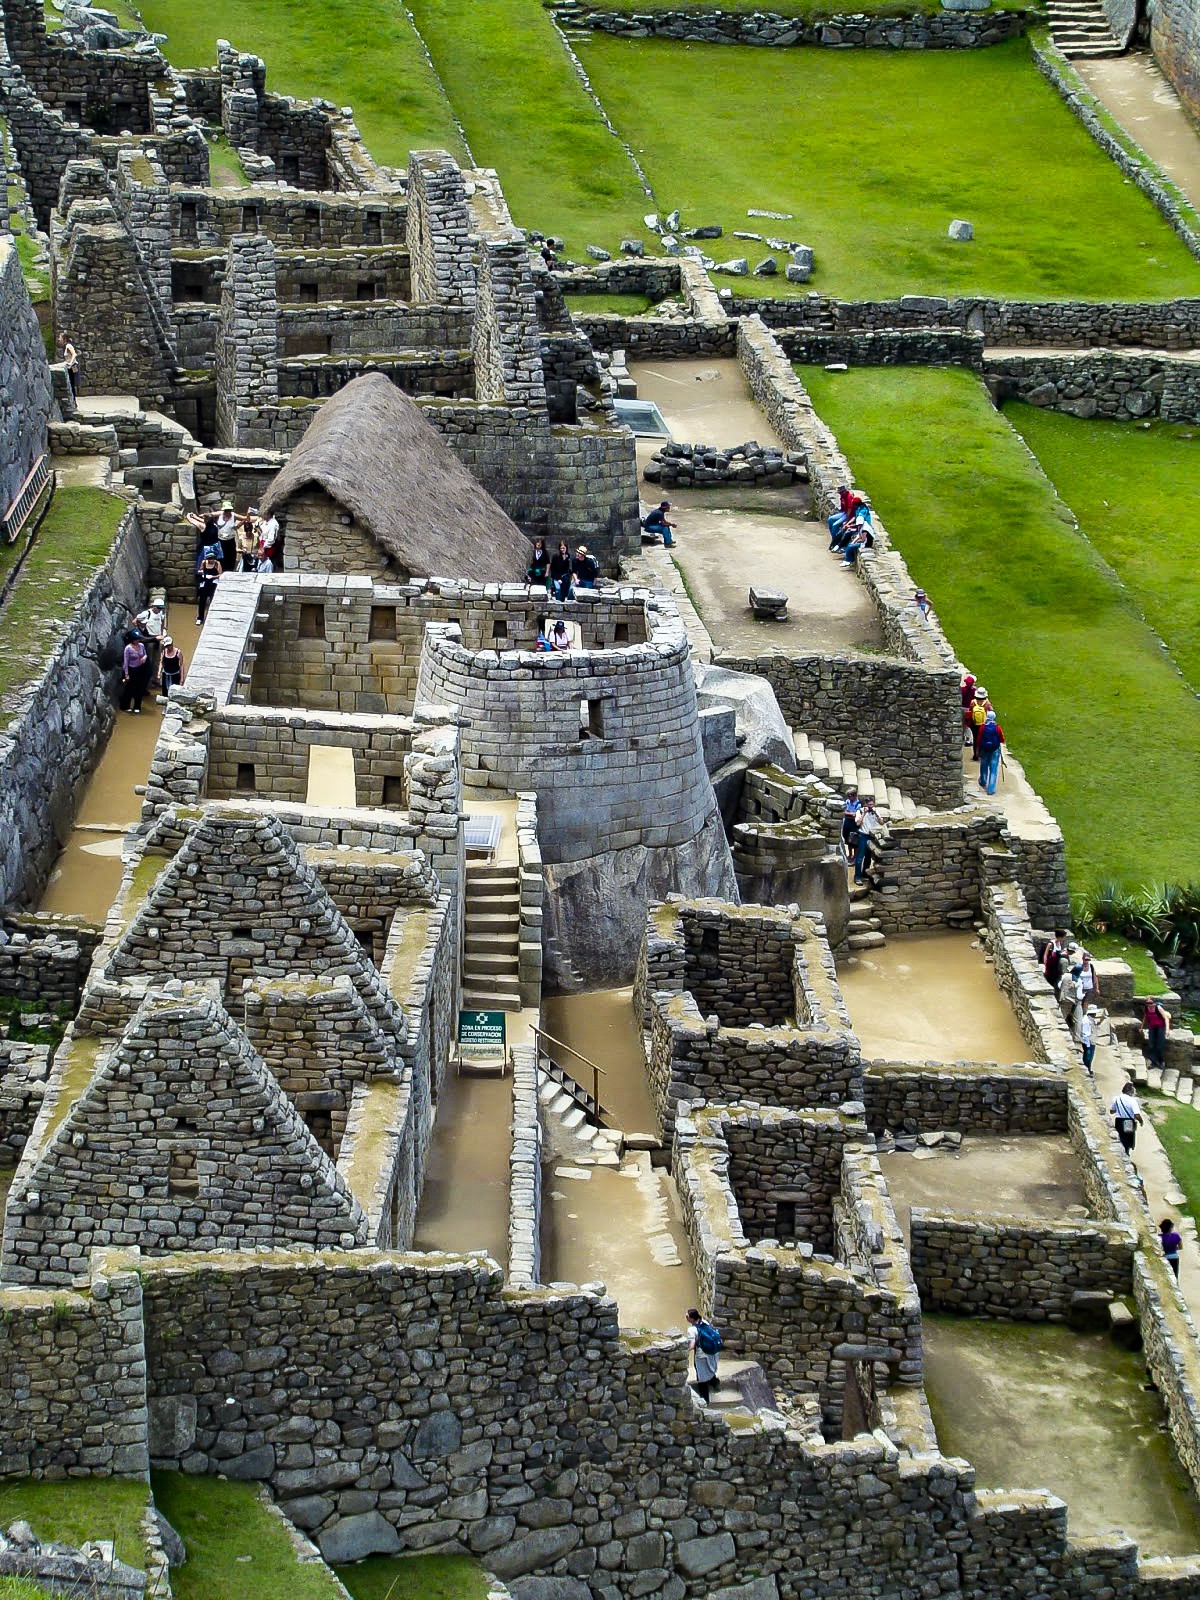 O Templo do Sol  a nica construo semicircular de Machu Picchu. Construdo sobre uma rocha  acredita-se que era um observatrio de astronomia.